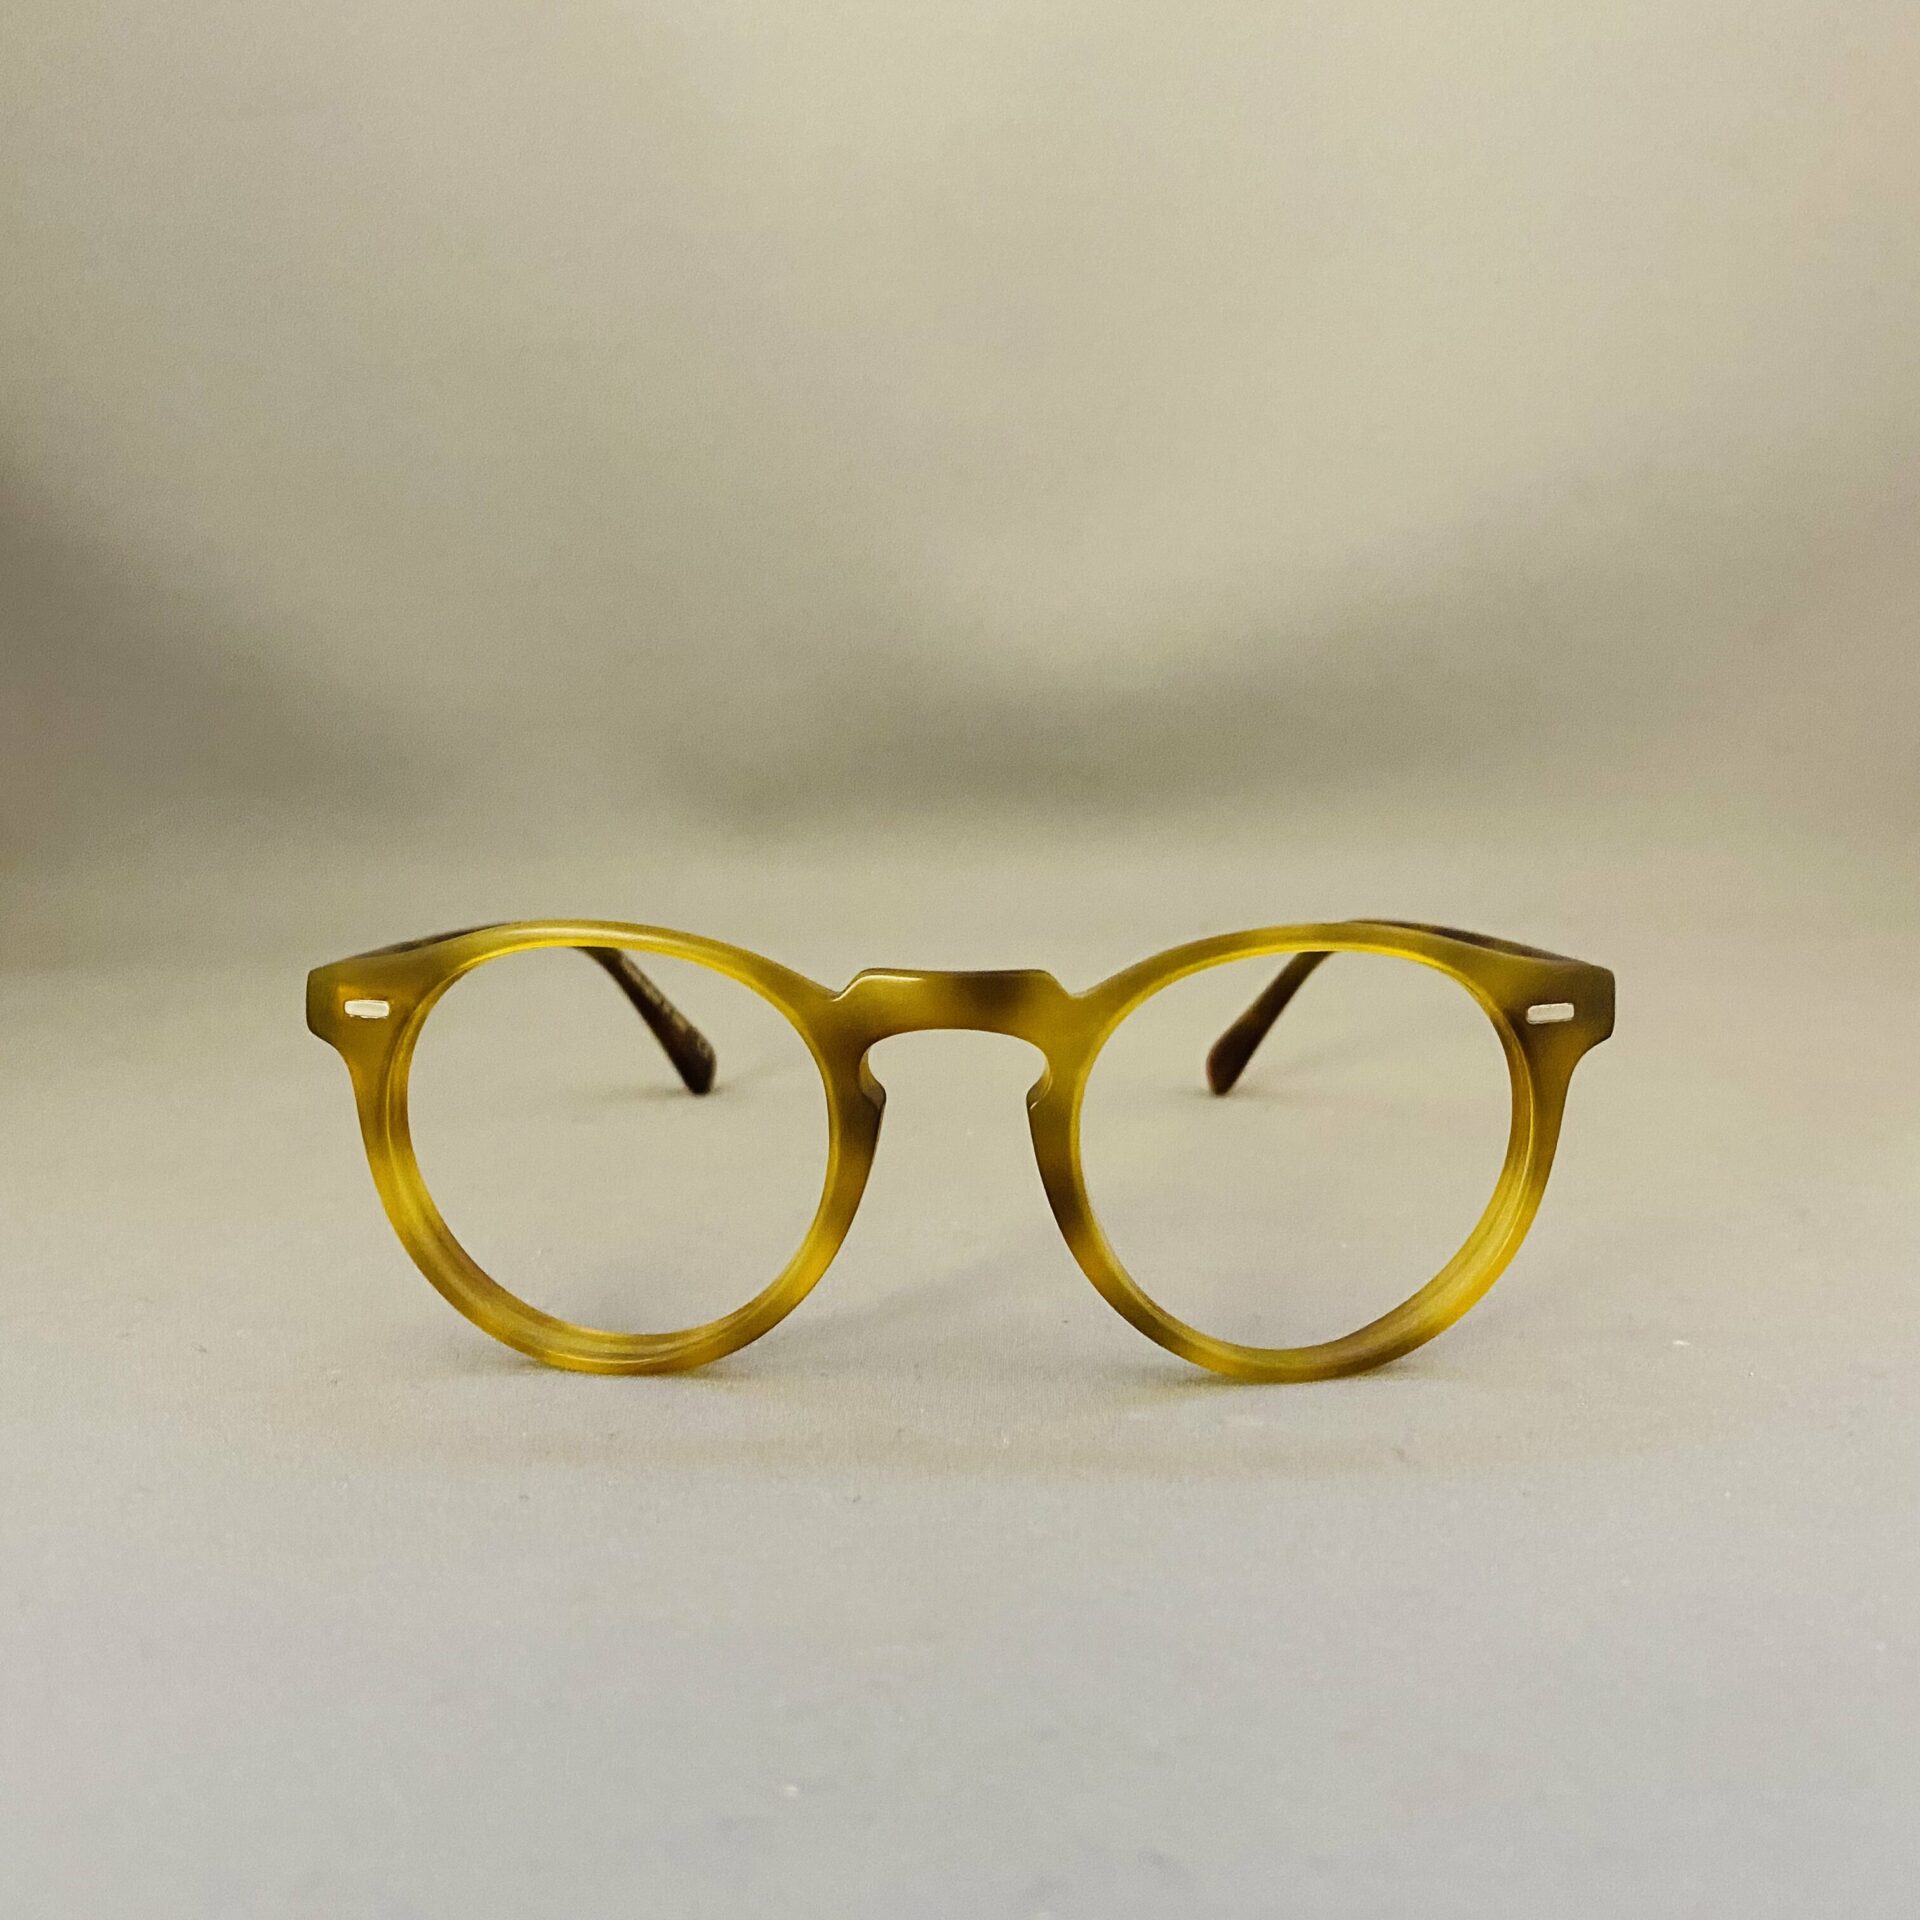 Votre opticien et les lunettes sur mesure : les bonnes adresses !